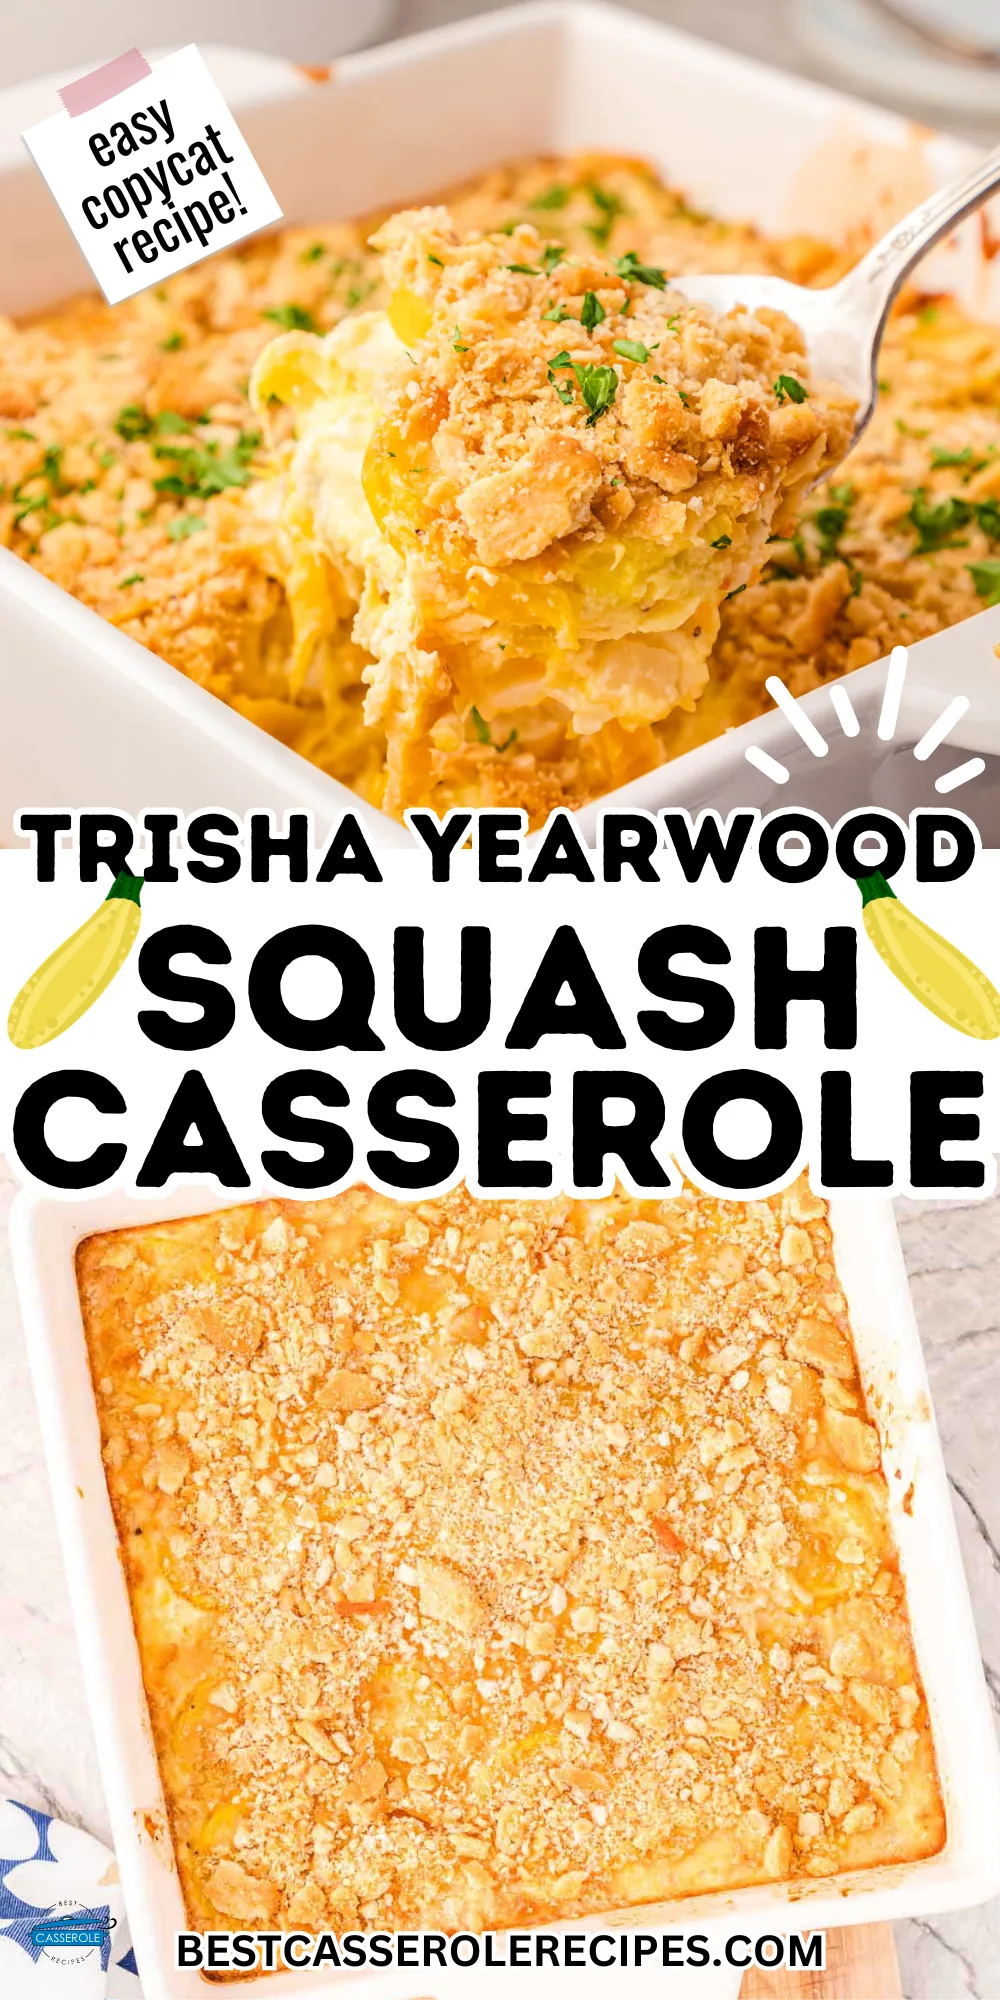 squash casserole using Trisha Yearwood's recipe